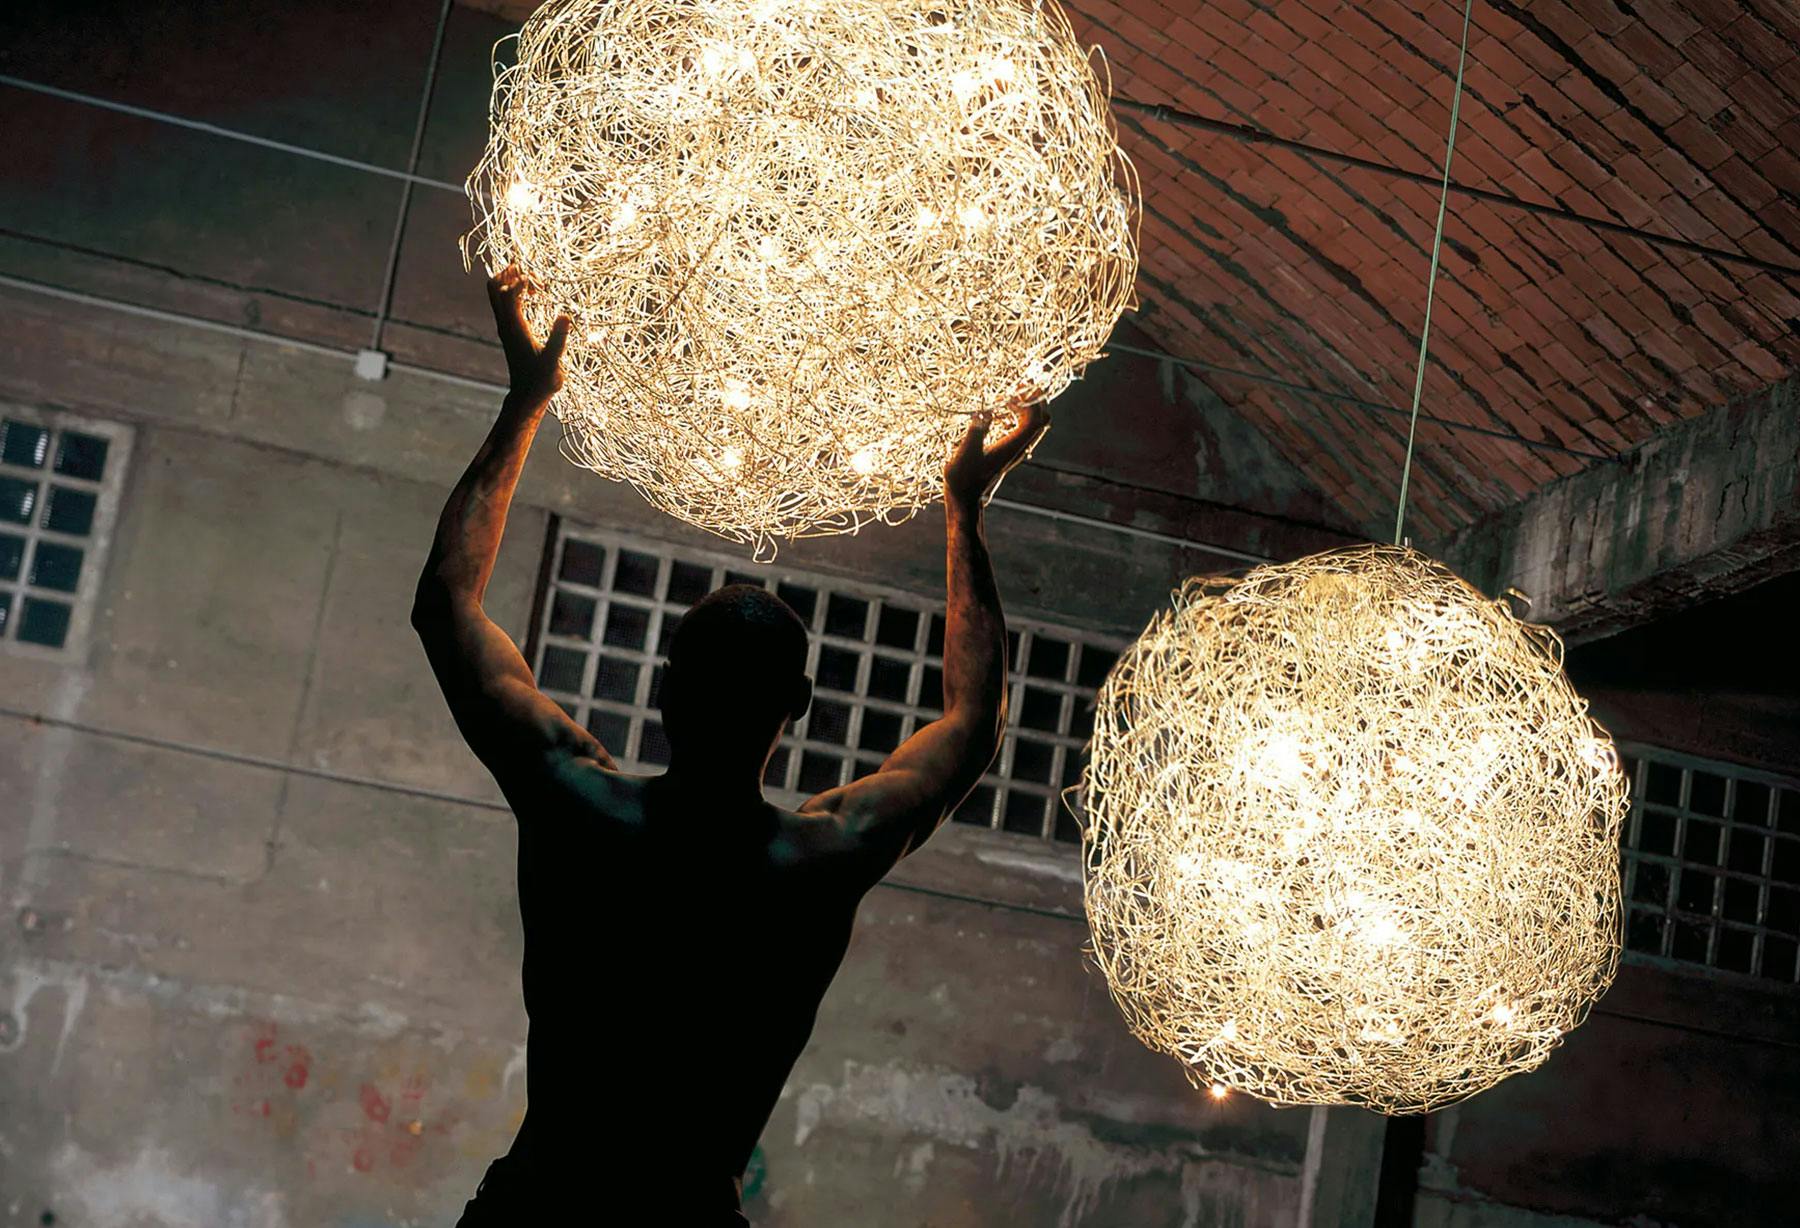 <p>Светильник «Fil de Fer», получивший наибольшую известность в мире, был выбран для композиции «Made in Italy» в итальянском павильоне на выставки World Expo Шанхай 2010, а после из-за своей удивительной конструкции стал частью экспозиции музея Шанхая.</p>
